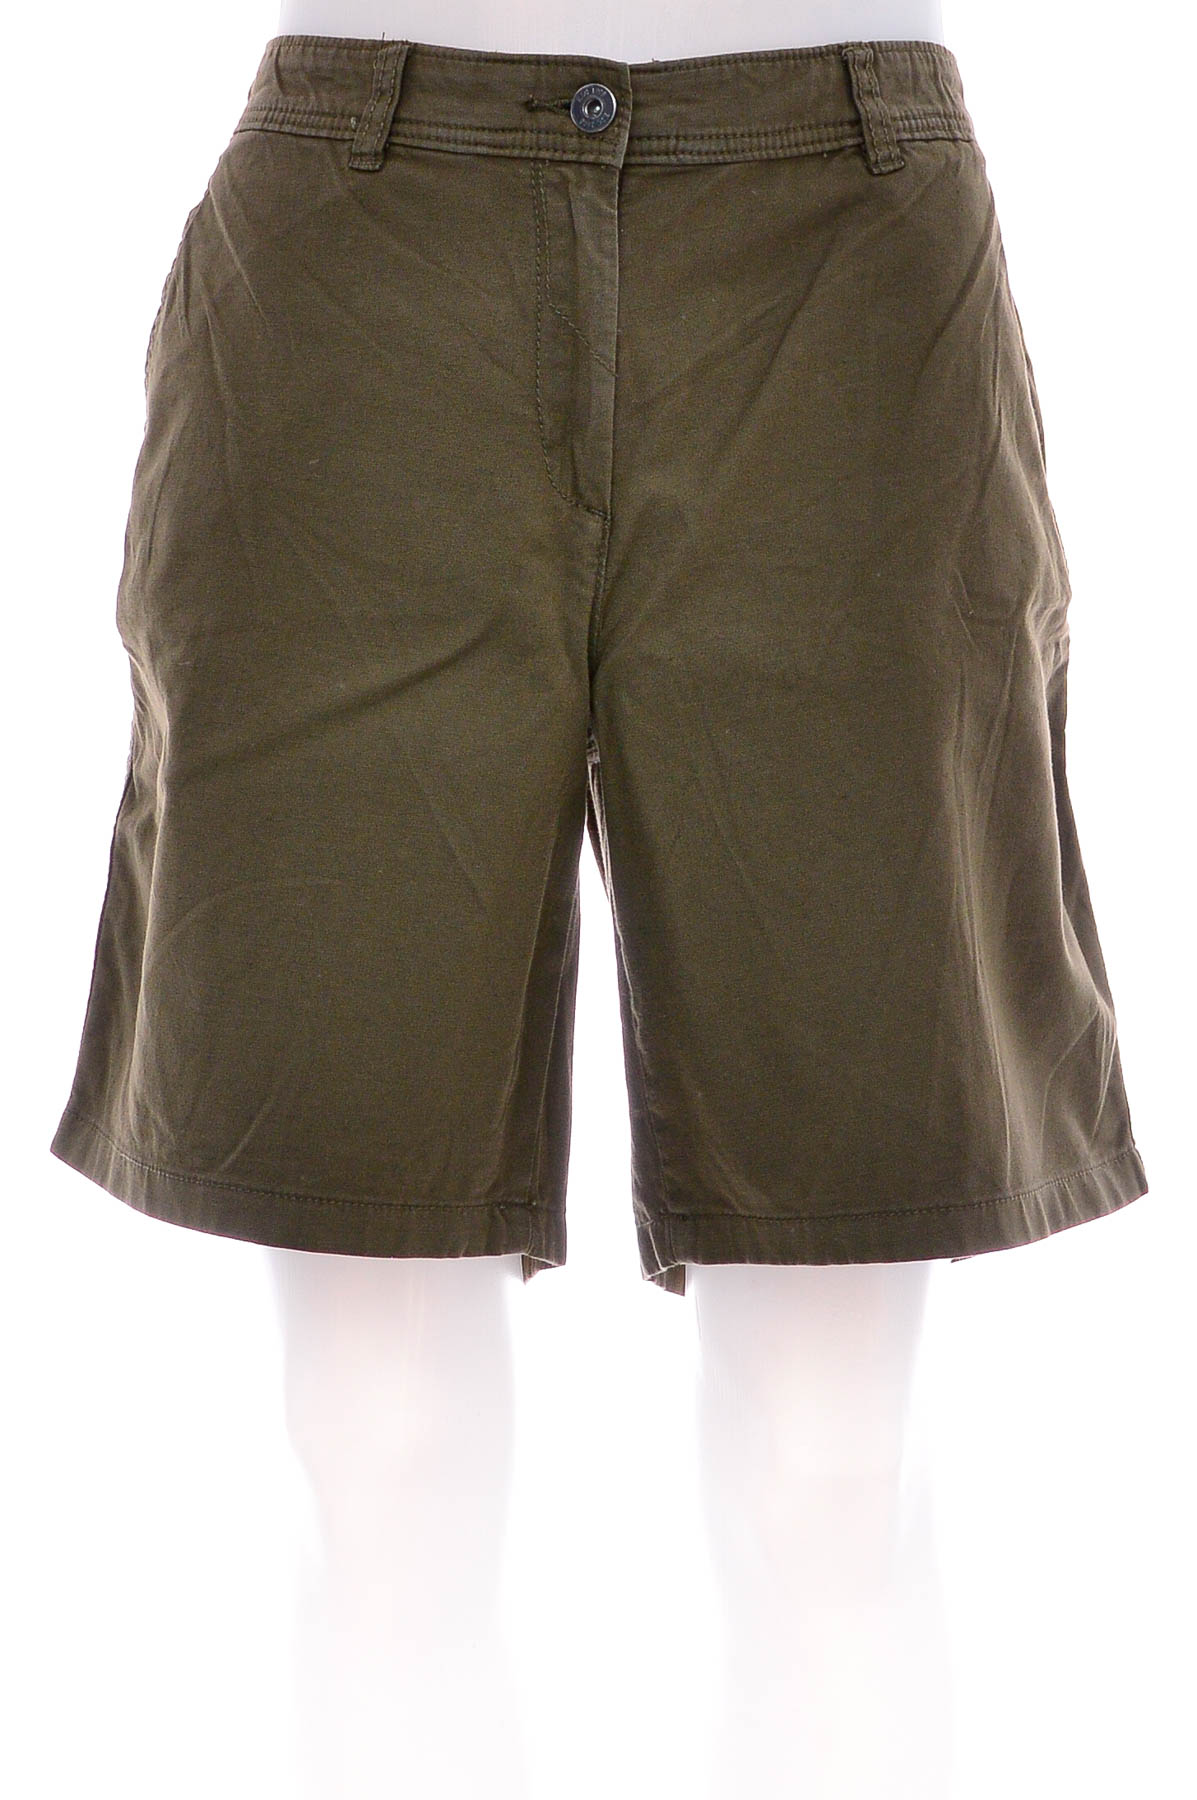 Female shorts - Еdc - 0